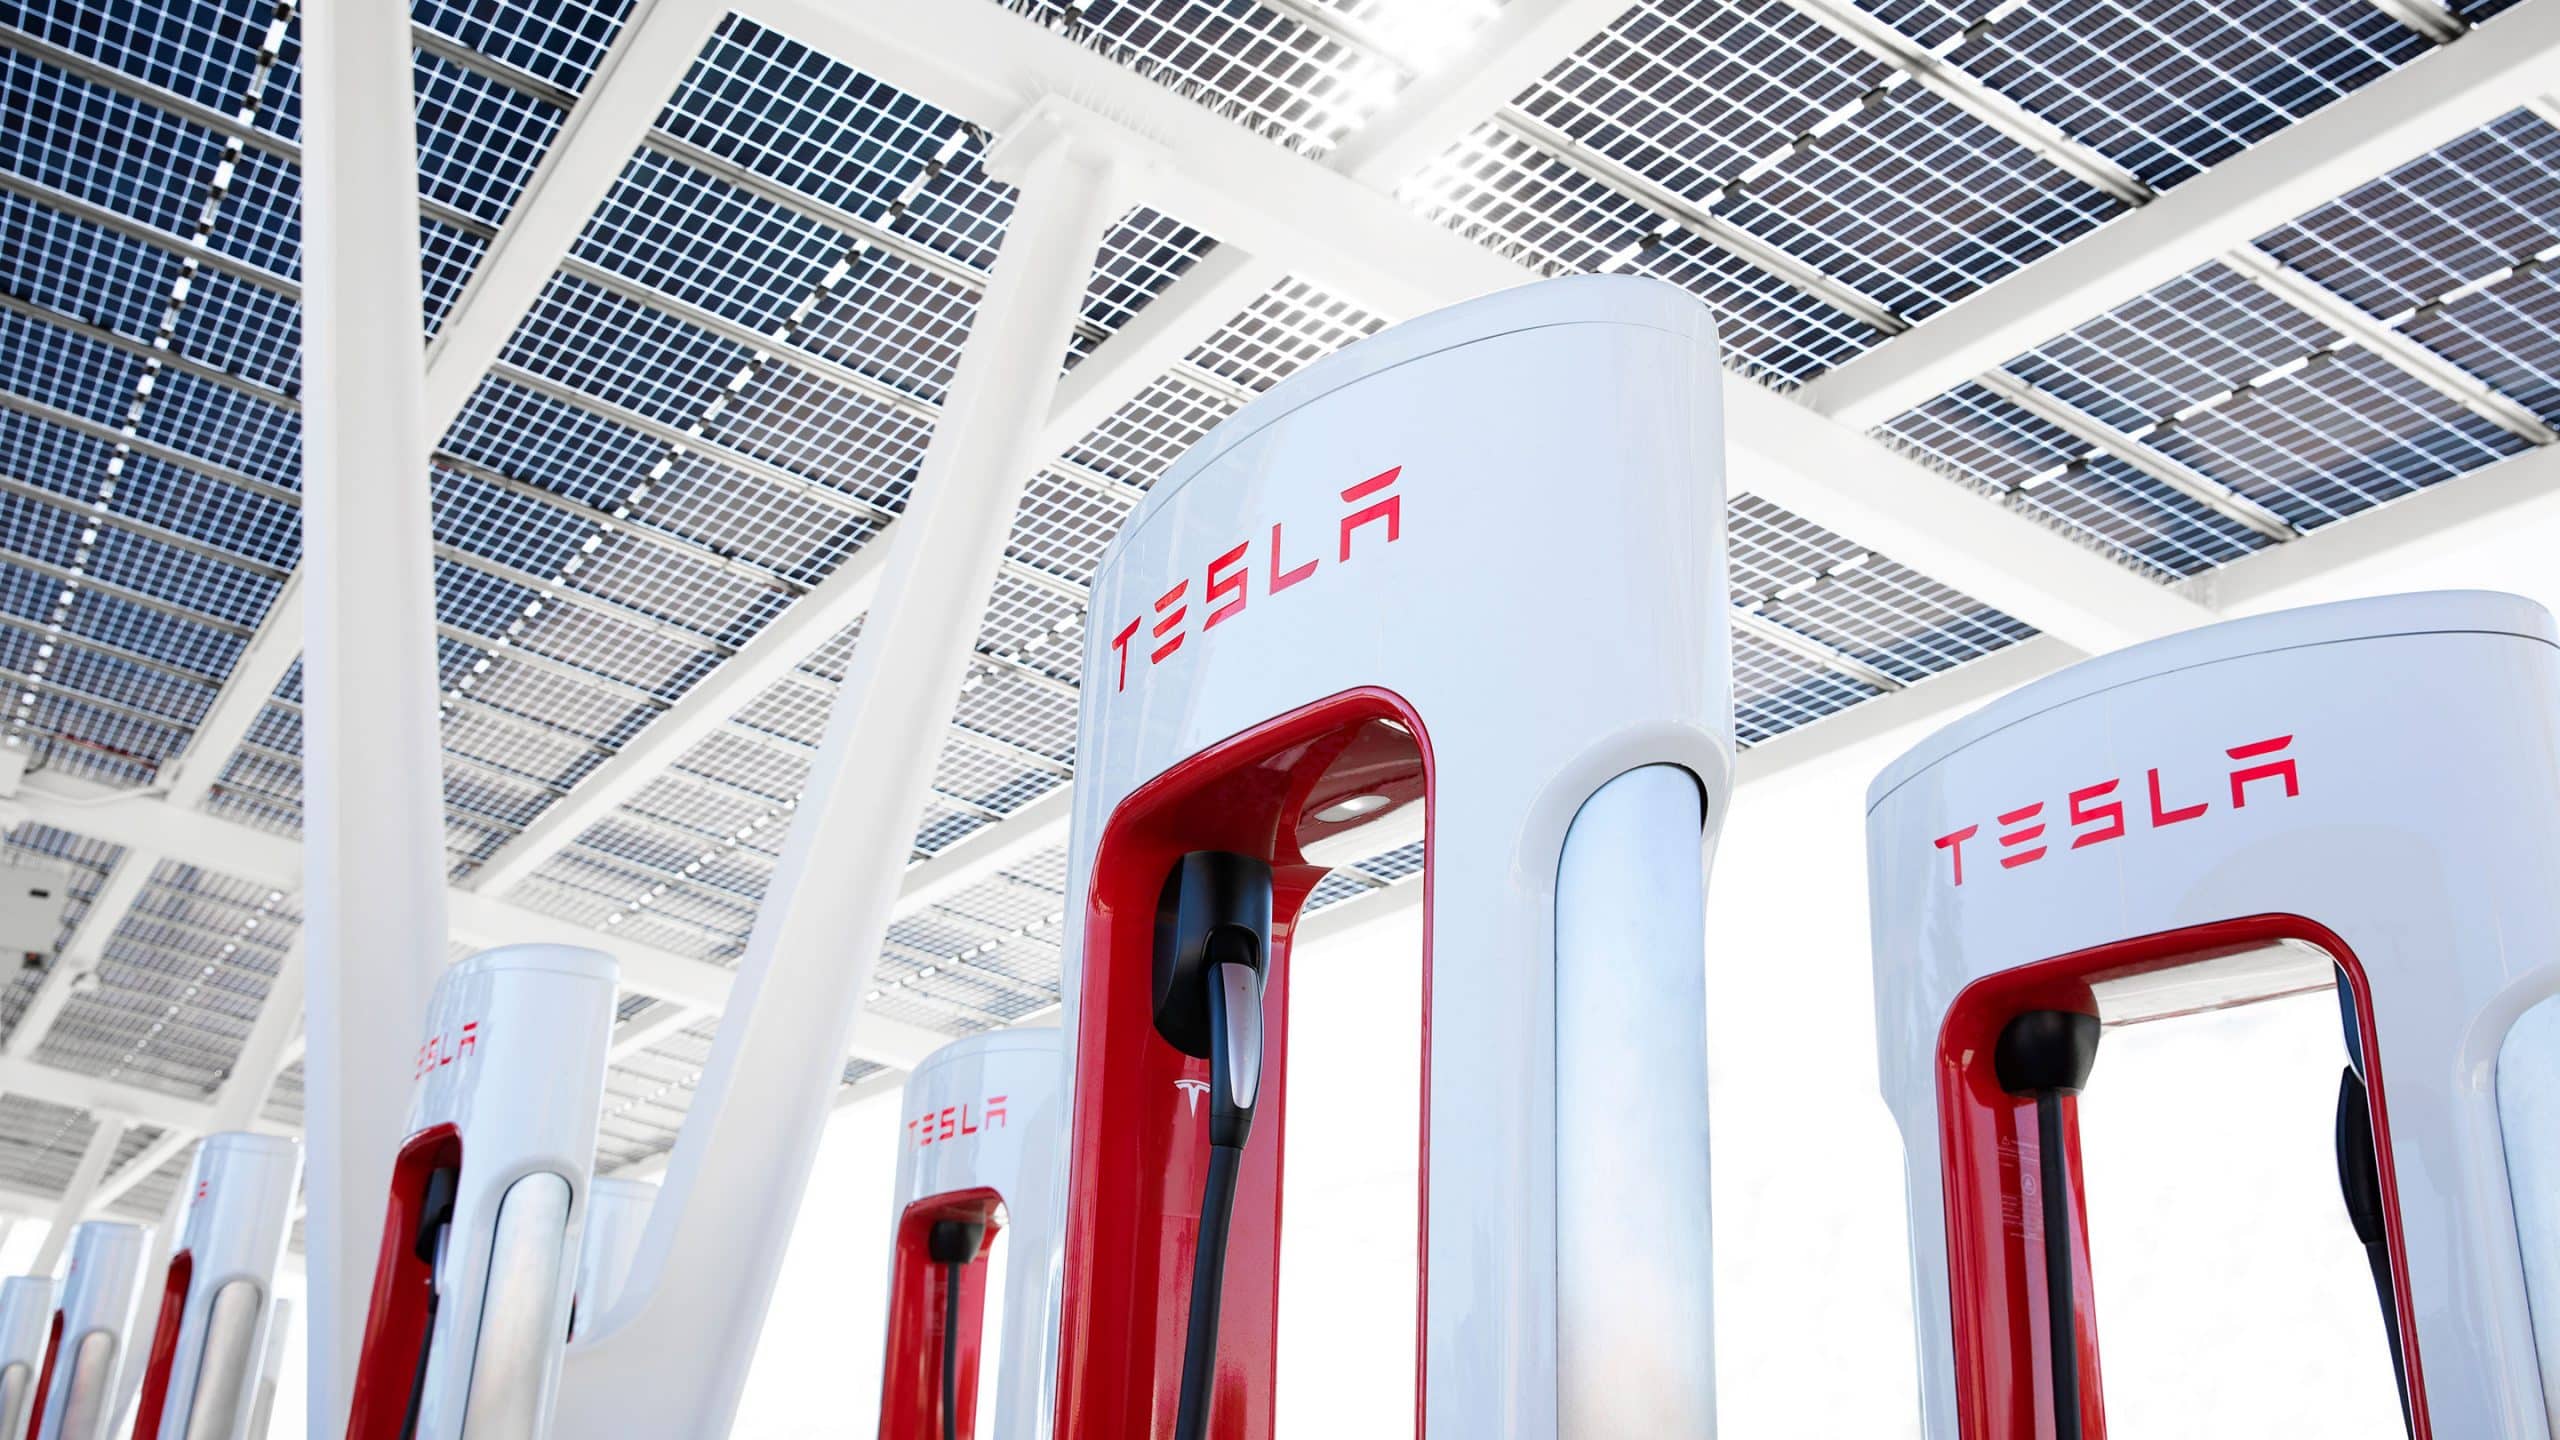 Une station de charge Tesla.